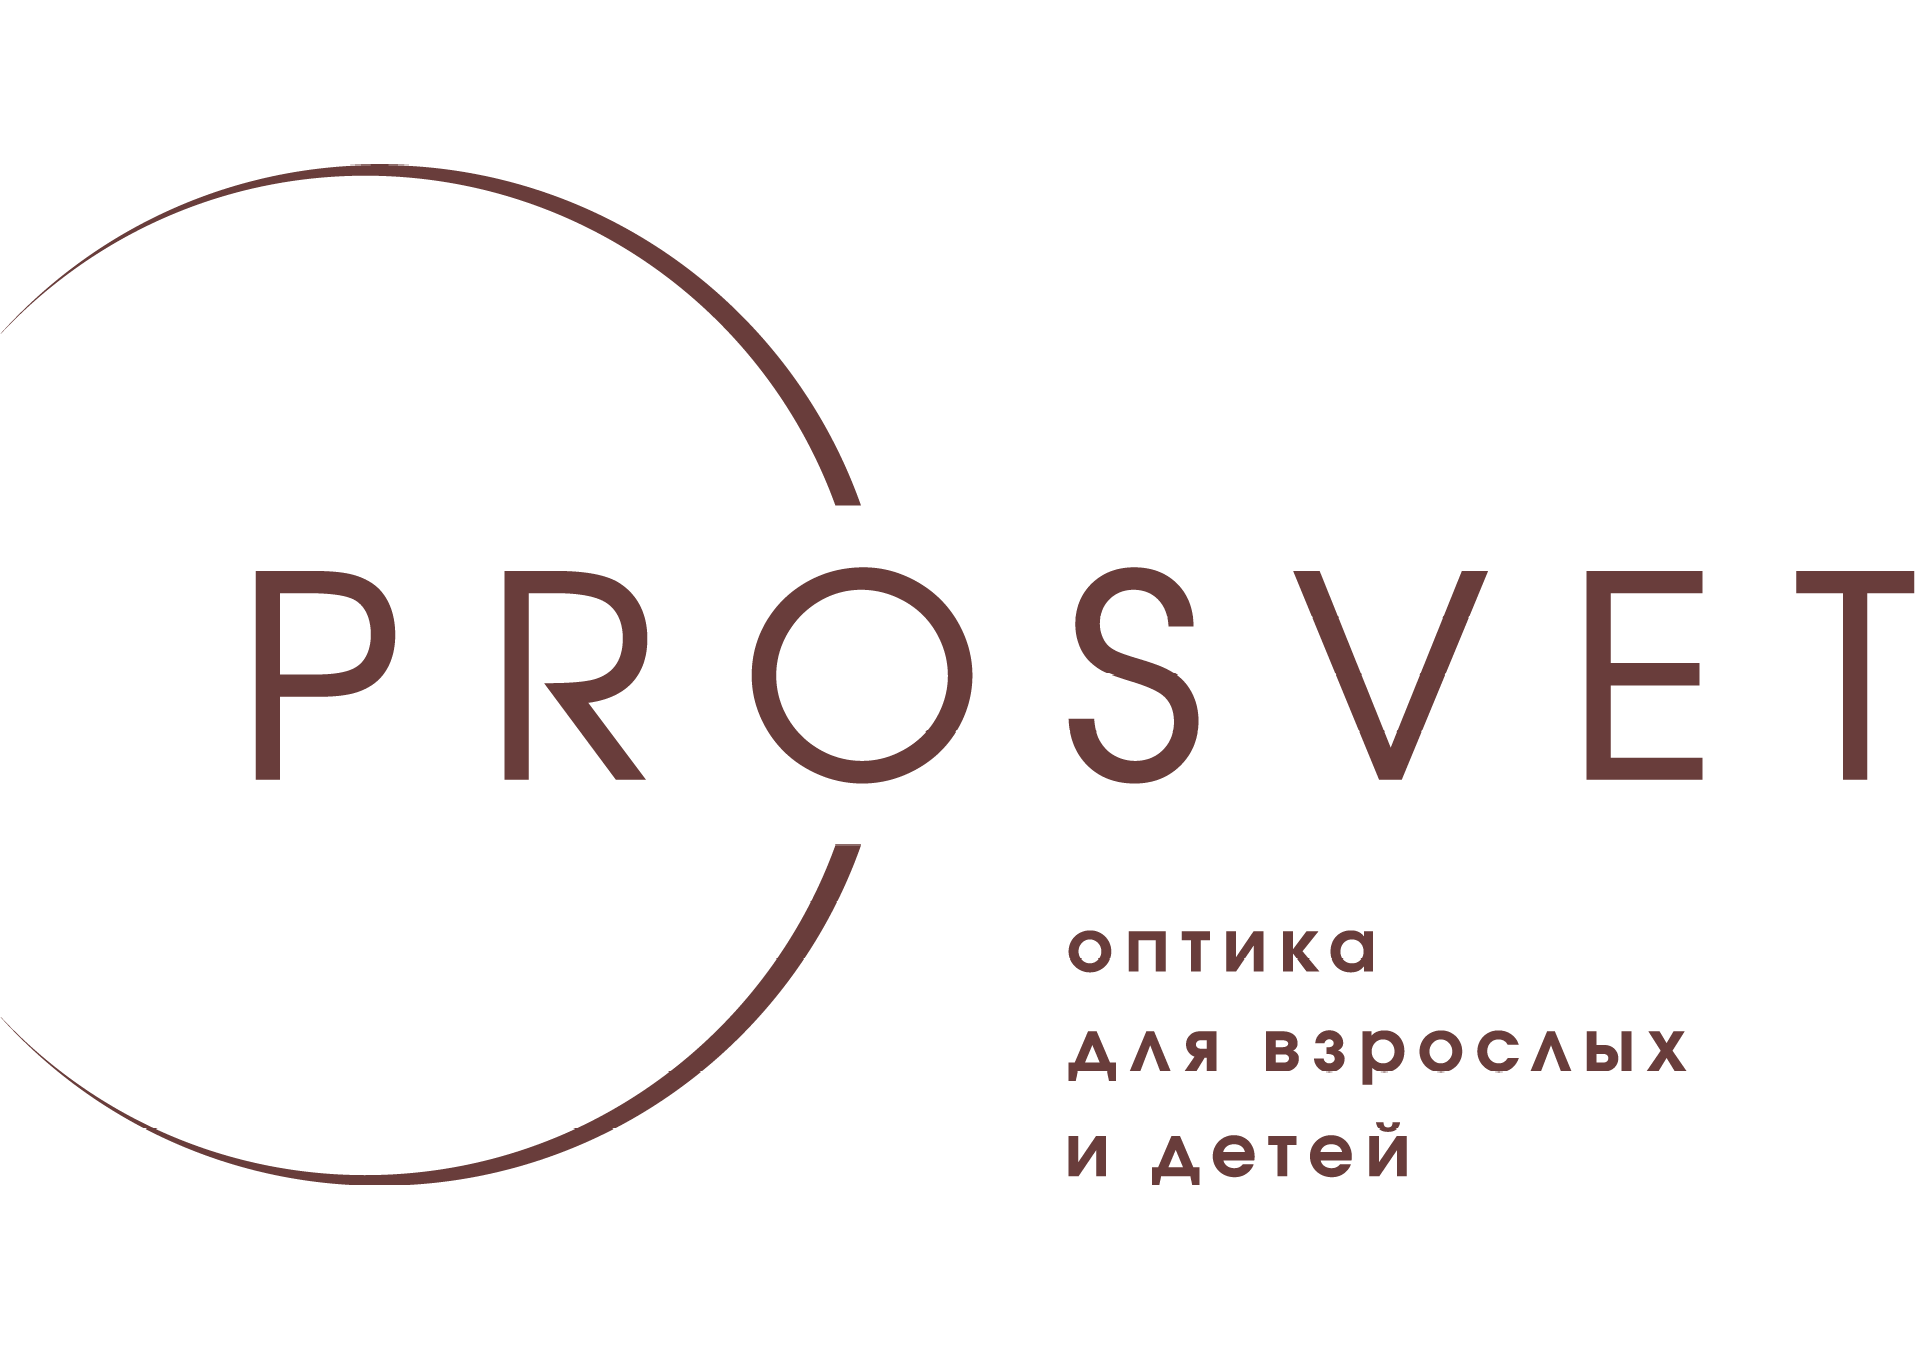 Сеть оптик "PROSVET" на Ольшевского